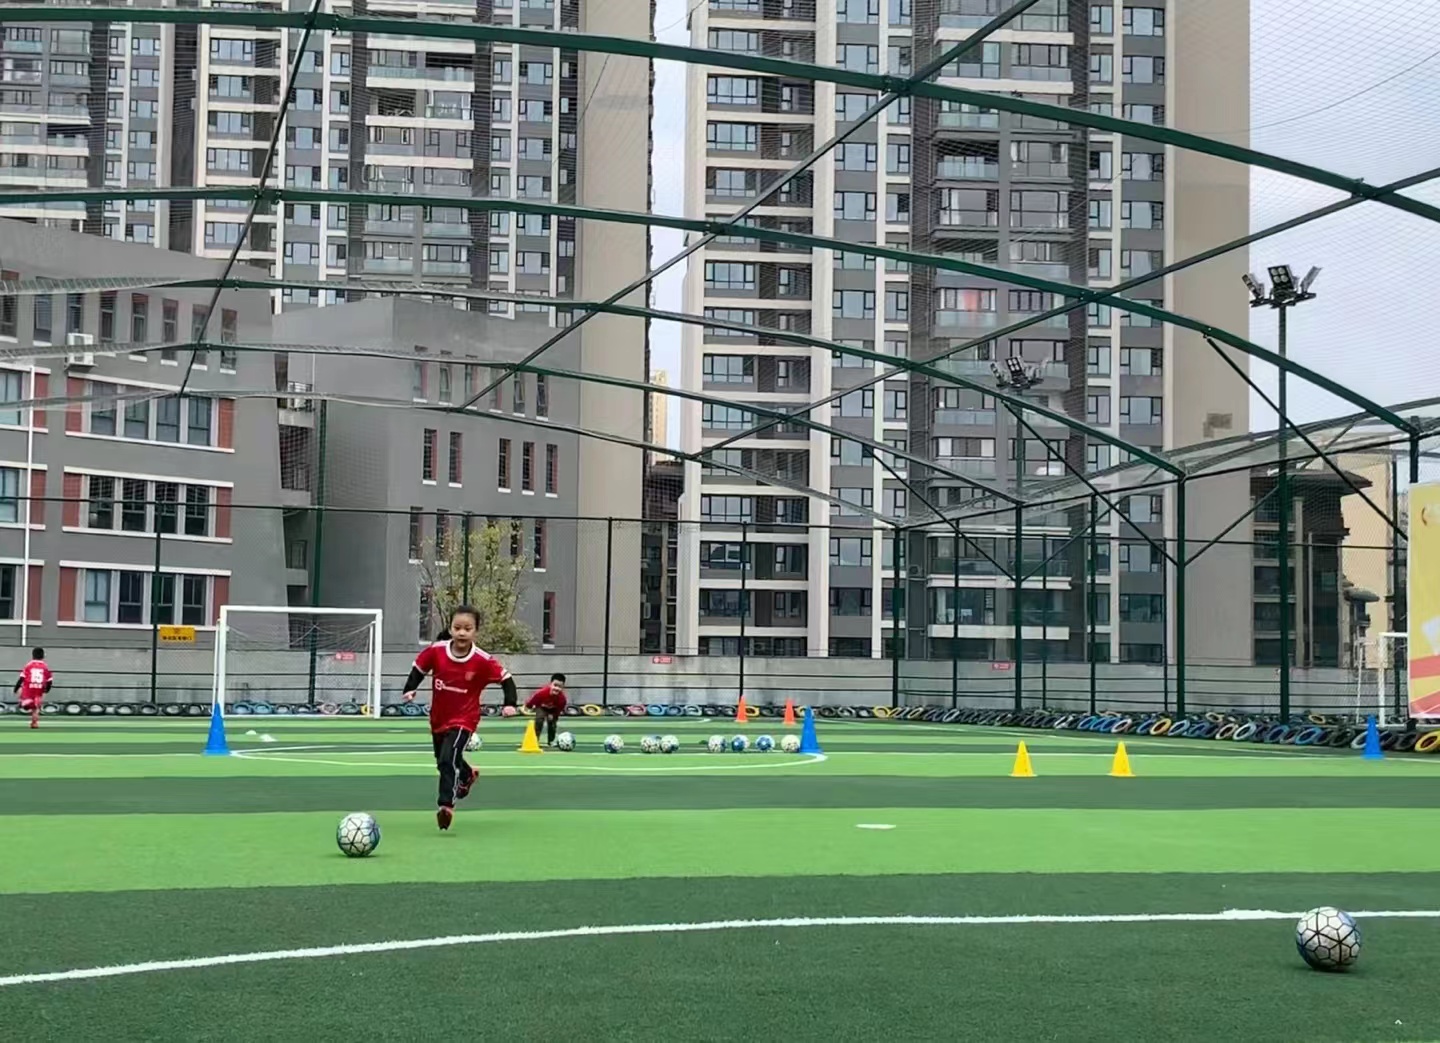 厦门9所幼儿园成足球特色园 全面开展足球教学活动